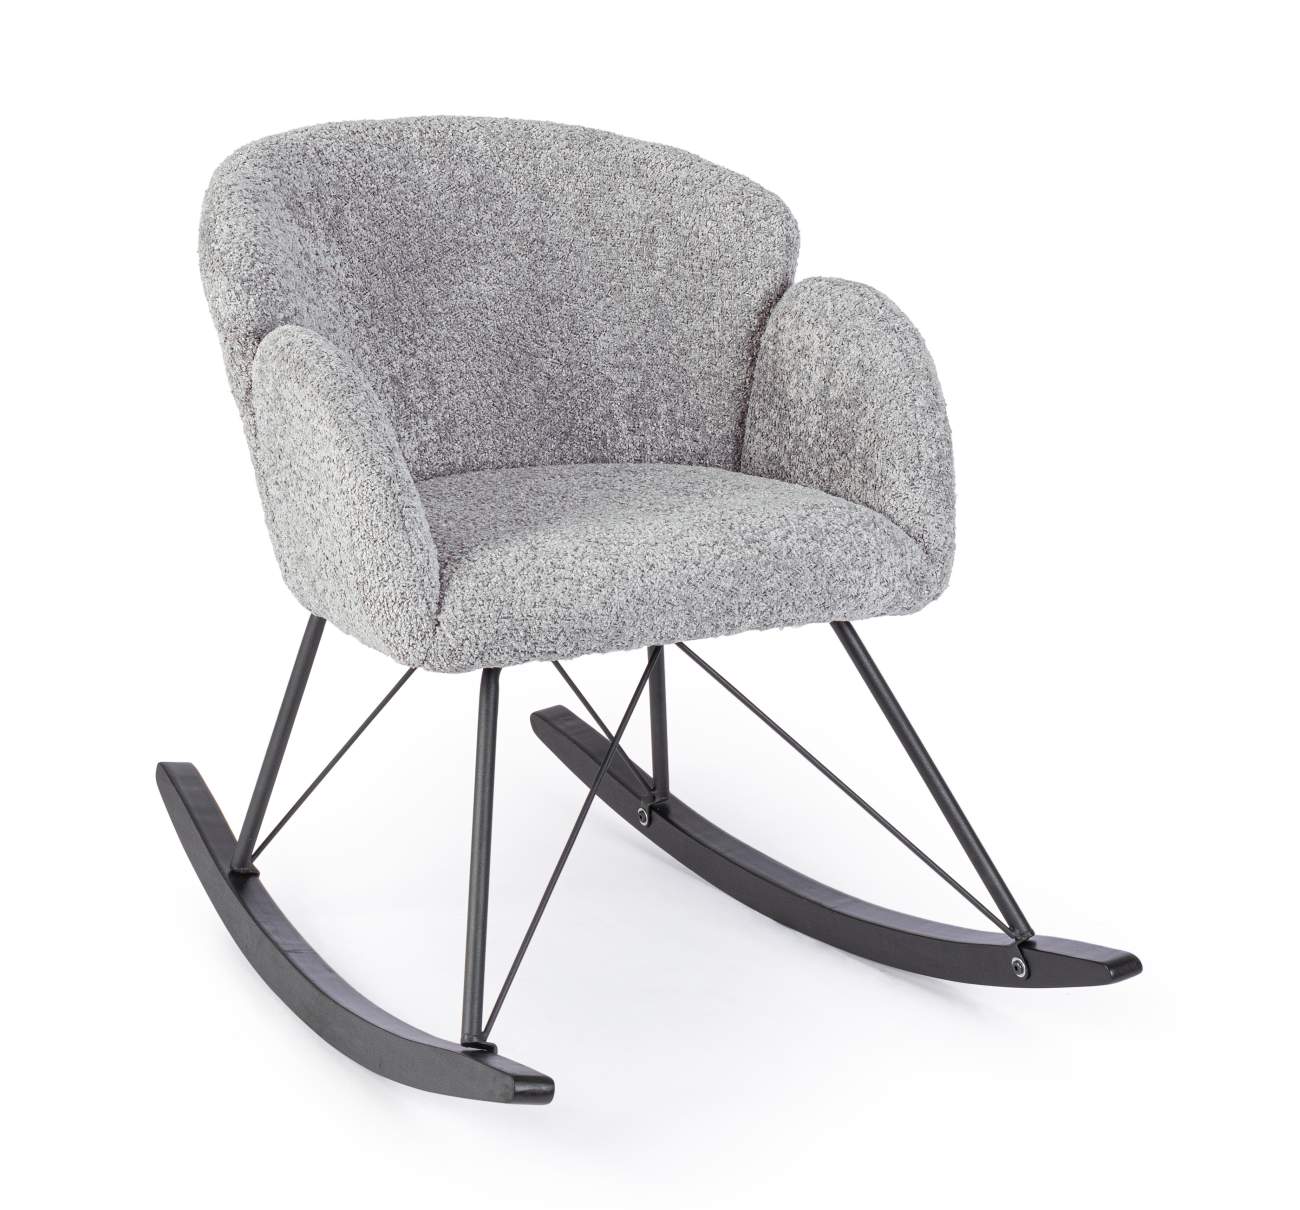 Der Schaukelsessel Sibilla überzeugt mit seinem modernen Stil. Gefertigt wurde er aus Stoff, welcher einen hellgrauen Farbton besitzt. Das Gestell ist aus Metall und hat eine schwarze Farbe. Der Sessel besitzt eine Sitzhöhe von 48 cm.